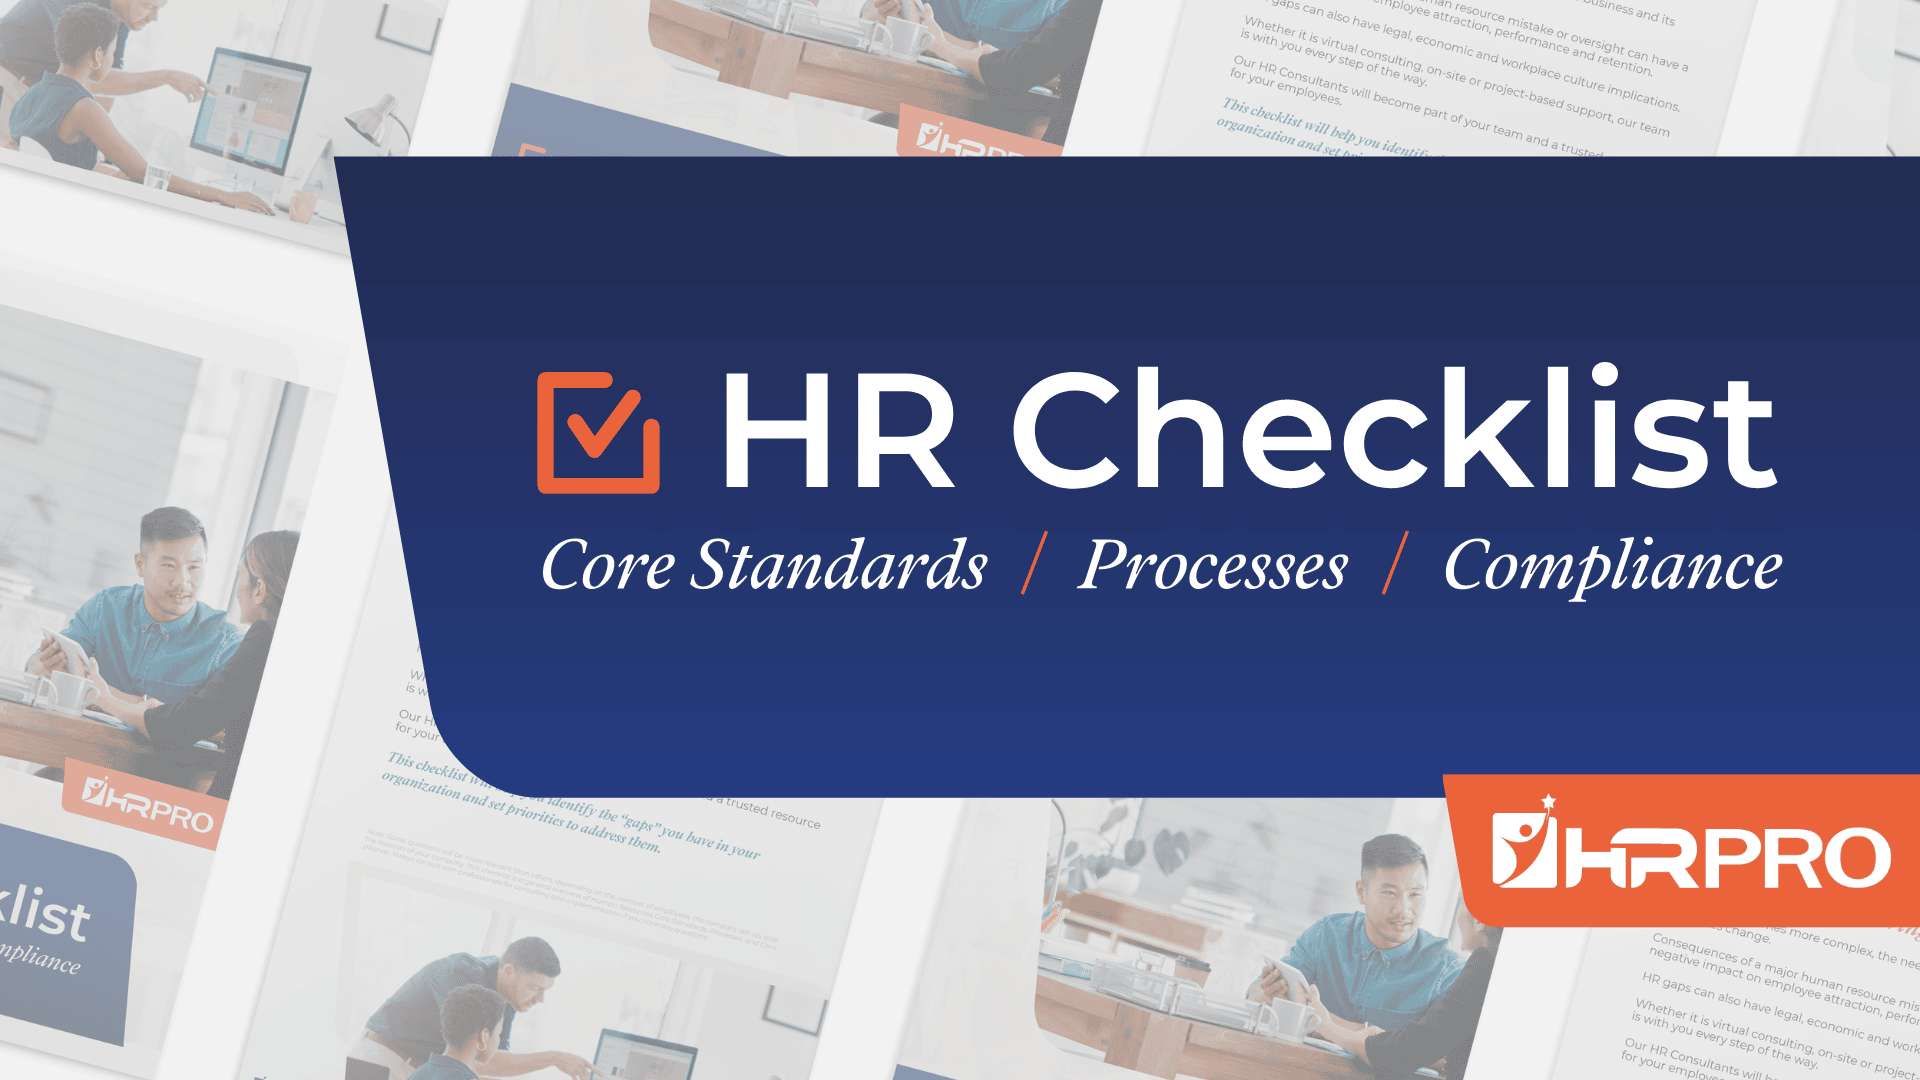 HR Checklist slide